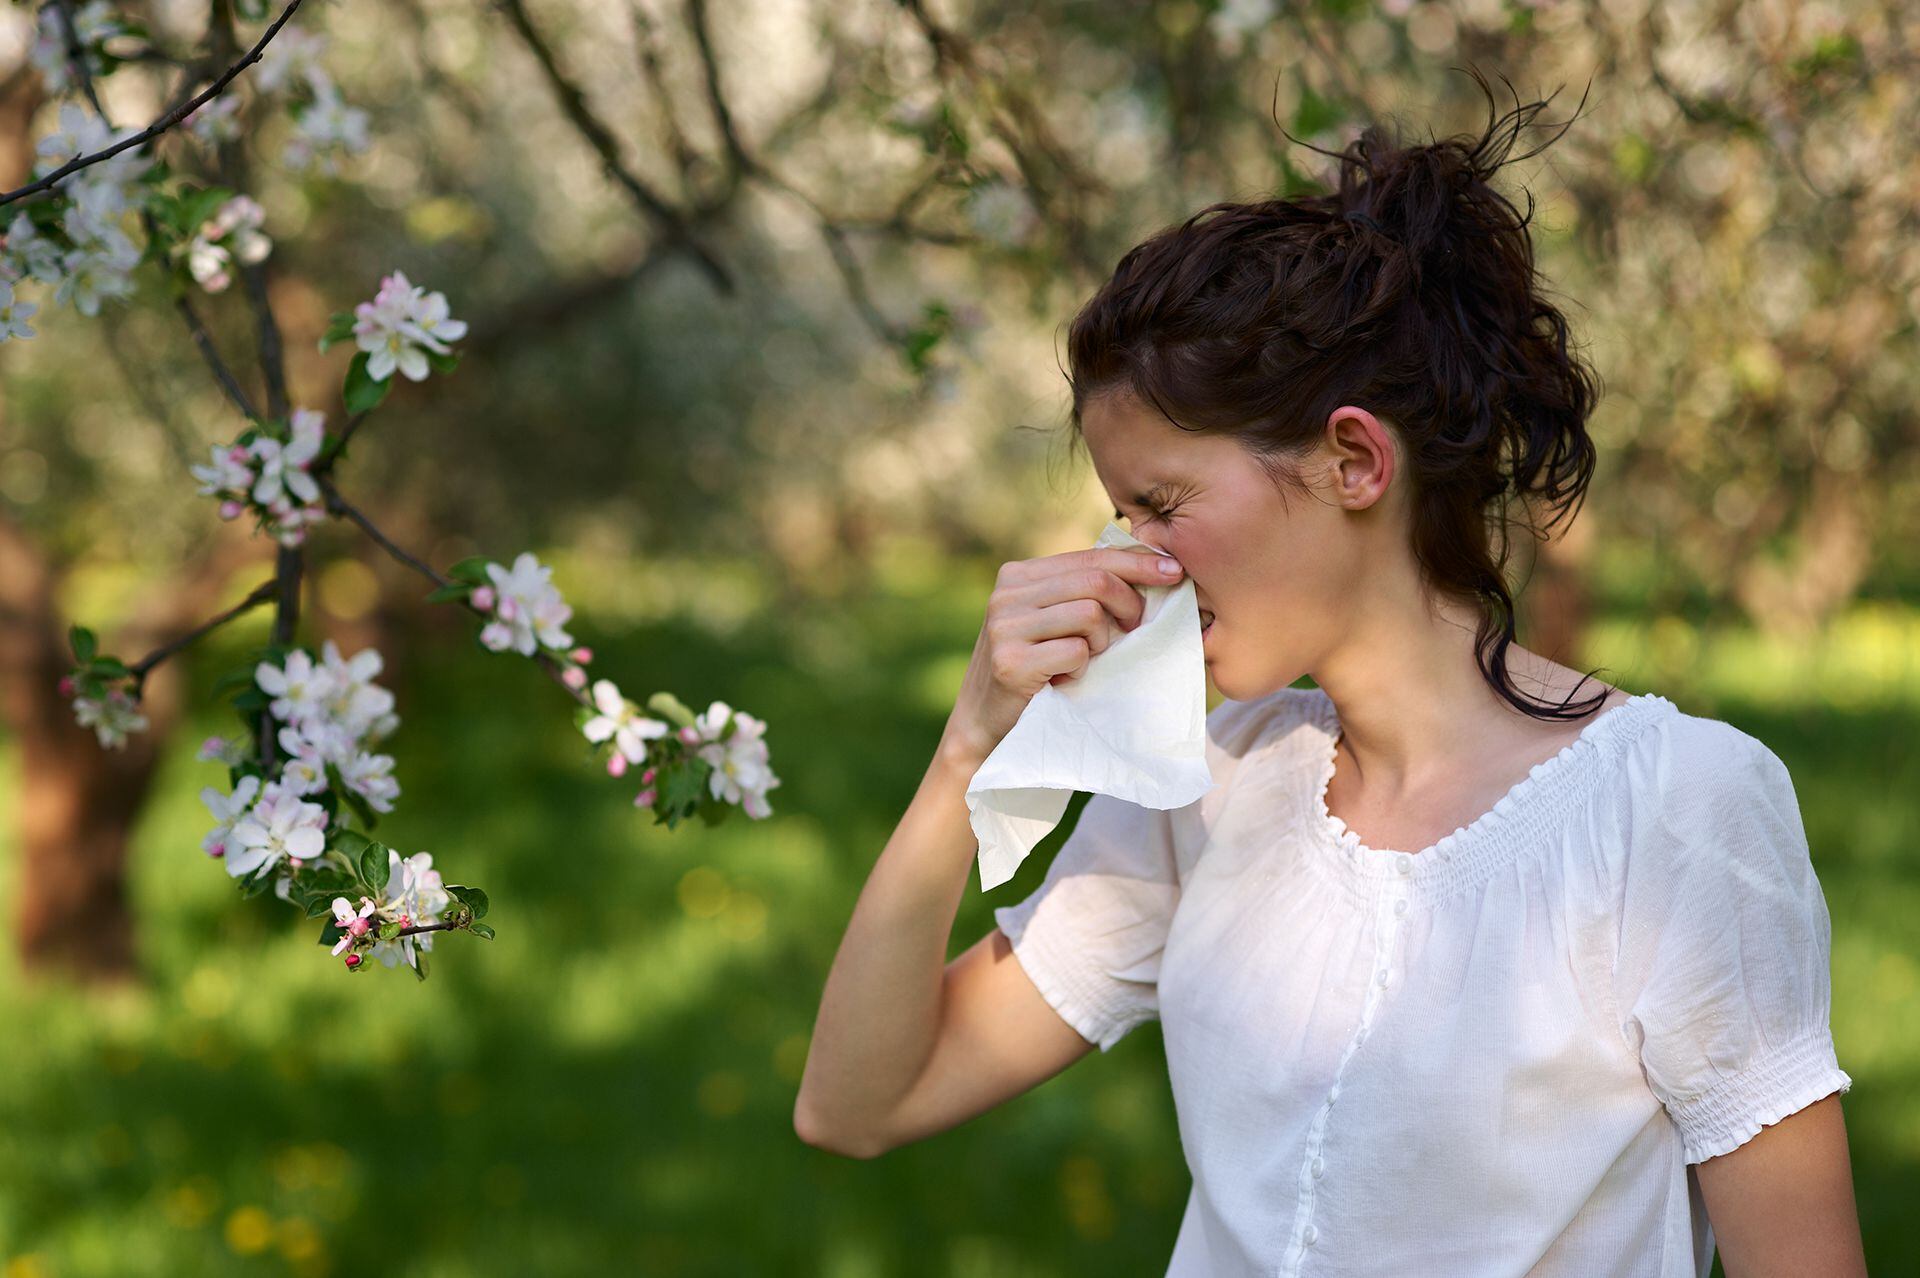 La estación de las flores y el amor es sinónimo de estallido de la naturaleza, que en muchas personas se traduce en congestión nasal, rinitis, estornudos y picazón en los ojos, entre otros síntomas